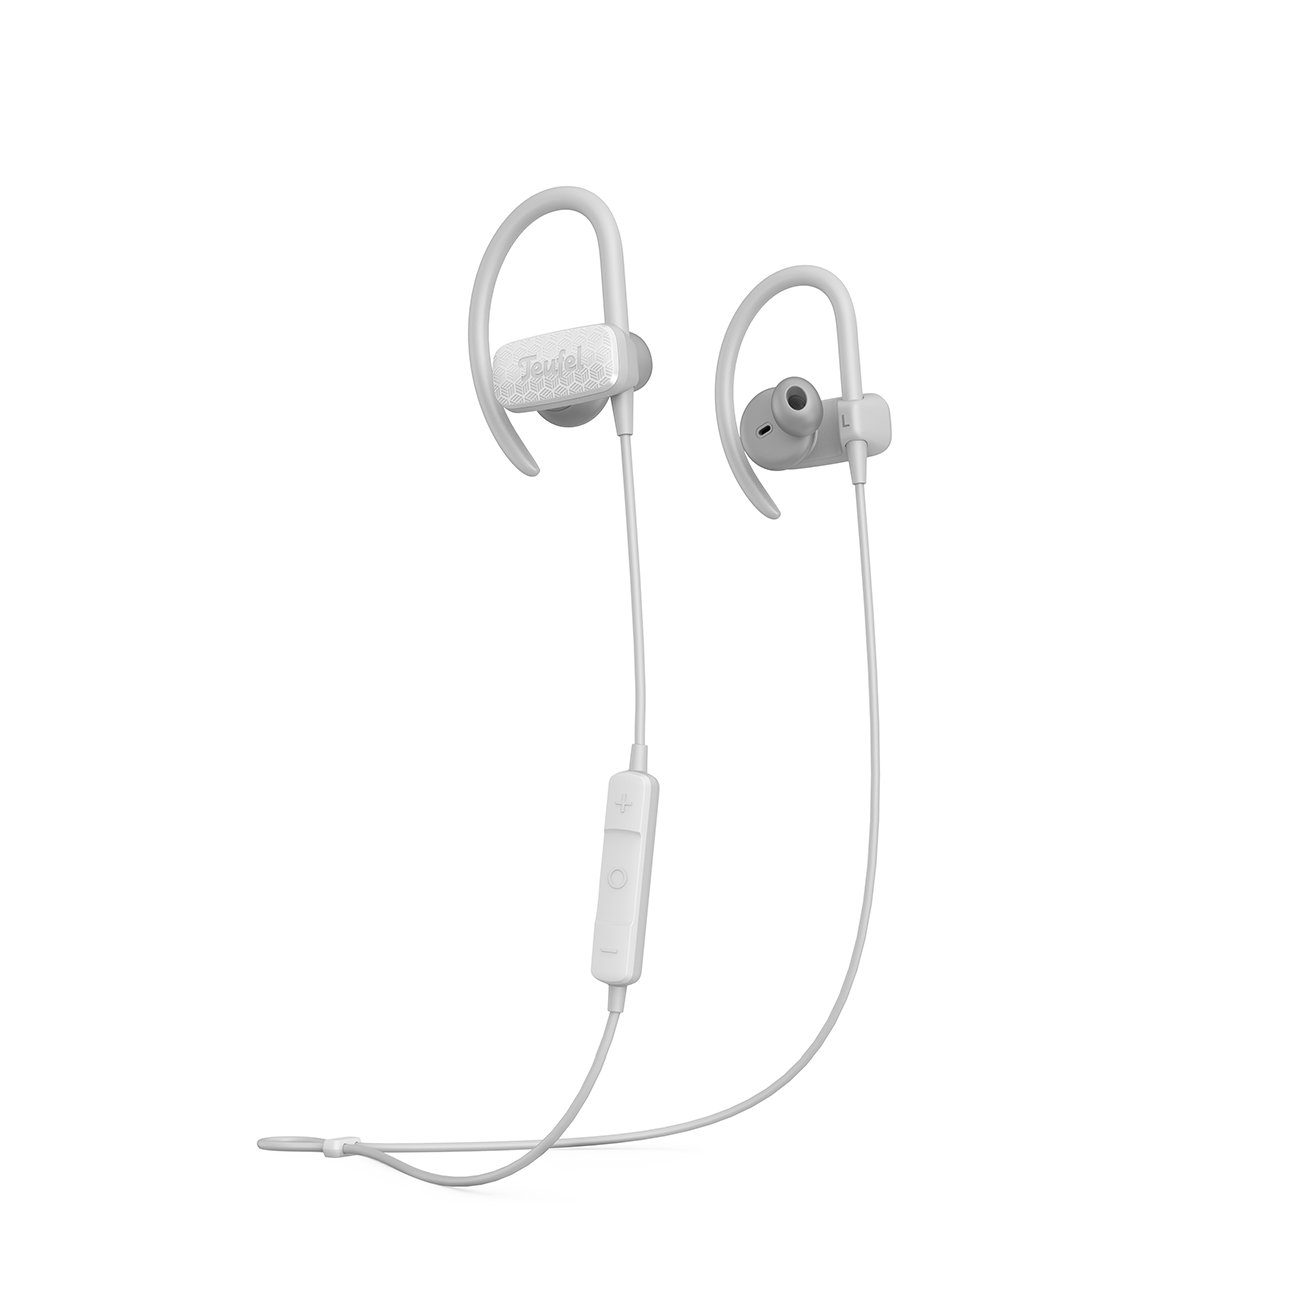 Teufel AIRY SPORTS Bluetooth-Kopfhörer (Wasserdicht nach IPX7, Freisprecheinrichtung mit Qualcomm, ShareMe-Funktion: zwei Навушники kabellos mit einem Smartphone verbinden)